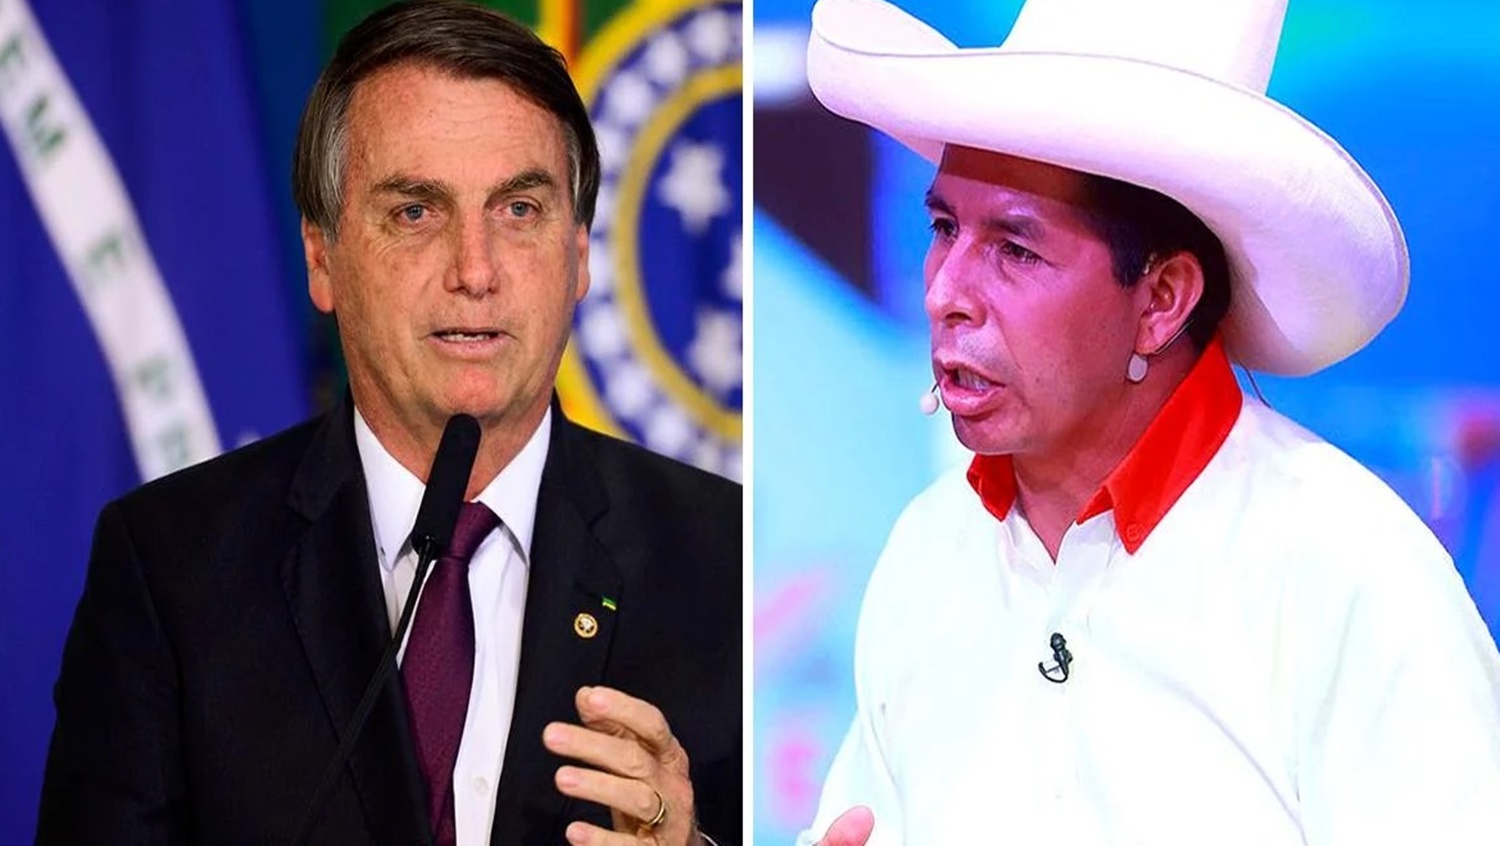 RONDÔNIA: Bolsonaro esteve na capital nesta quinta para reunião com o presidente do Peru